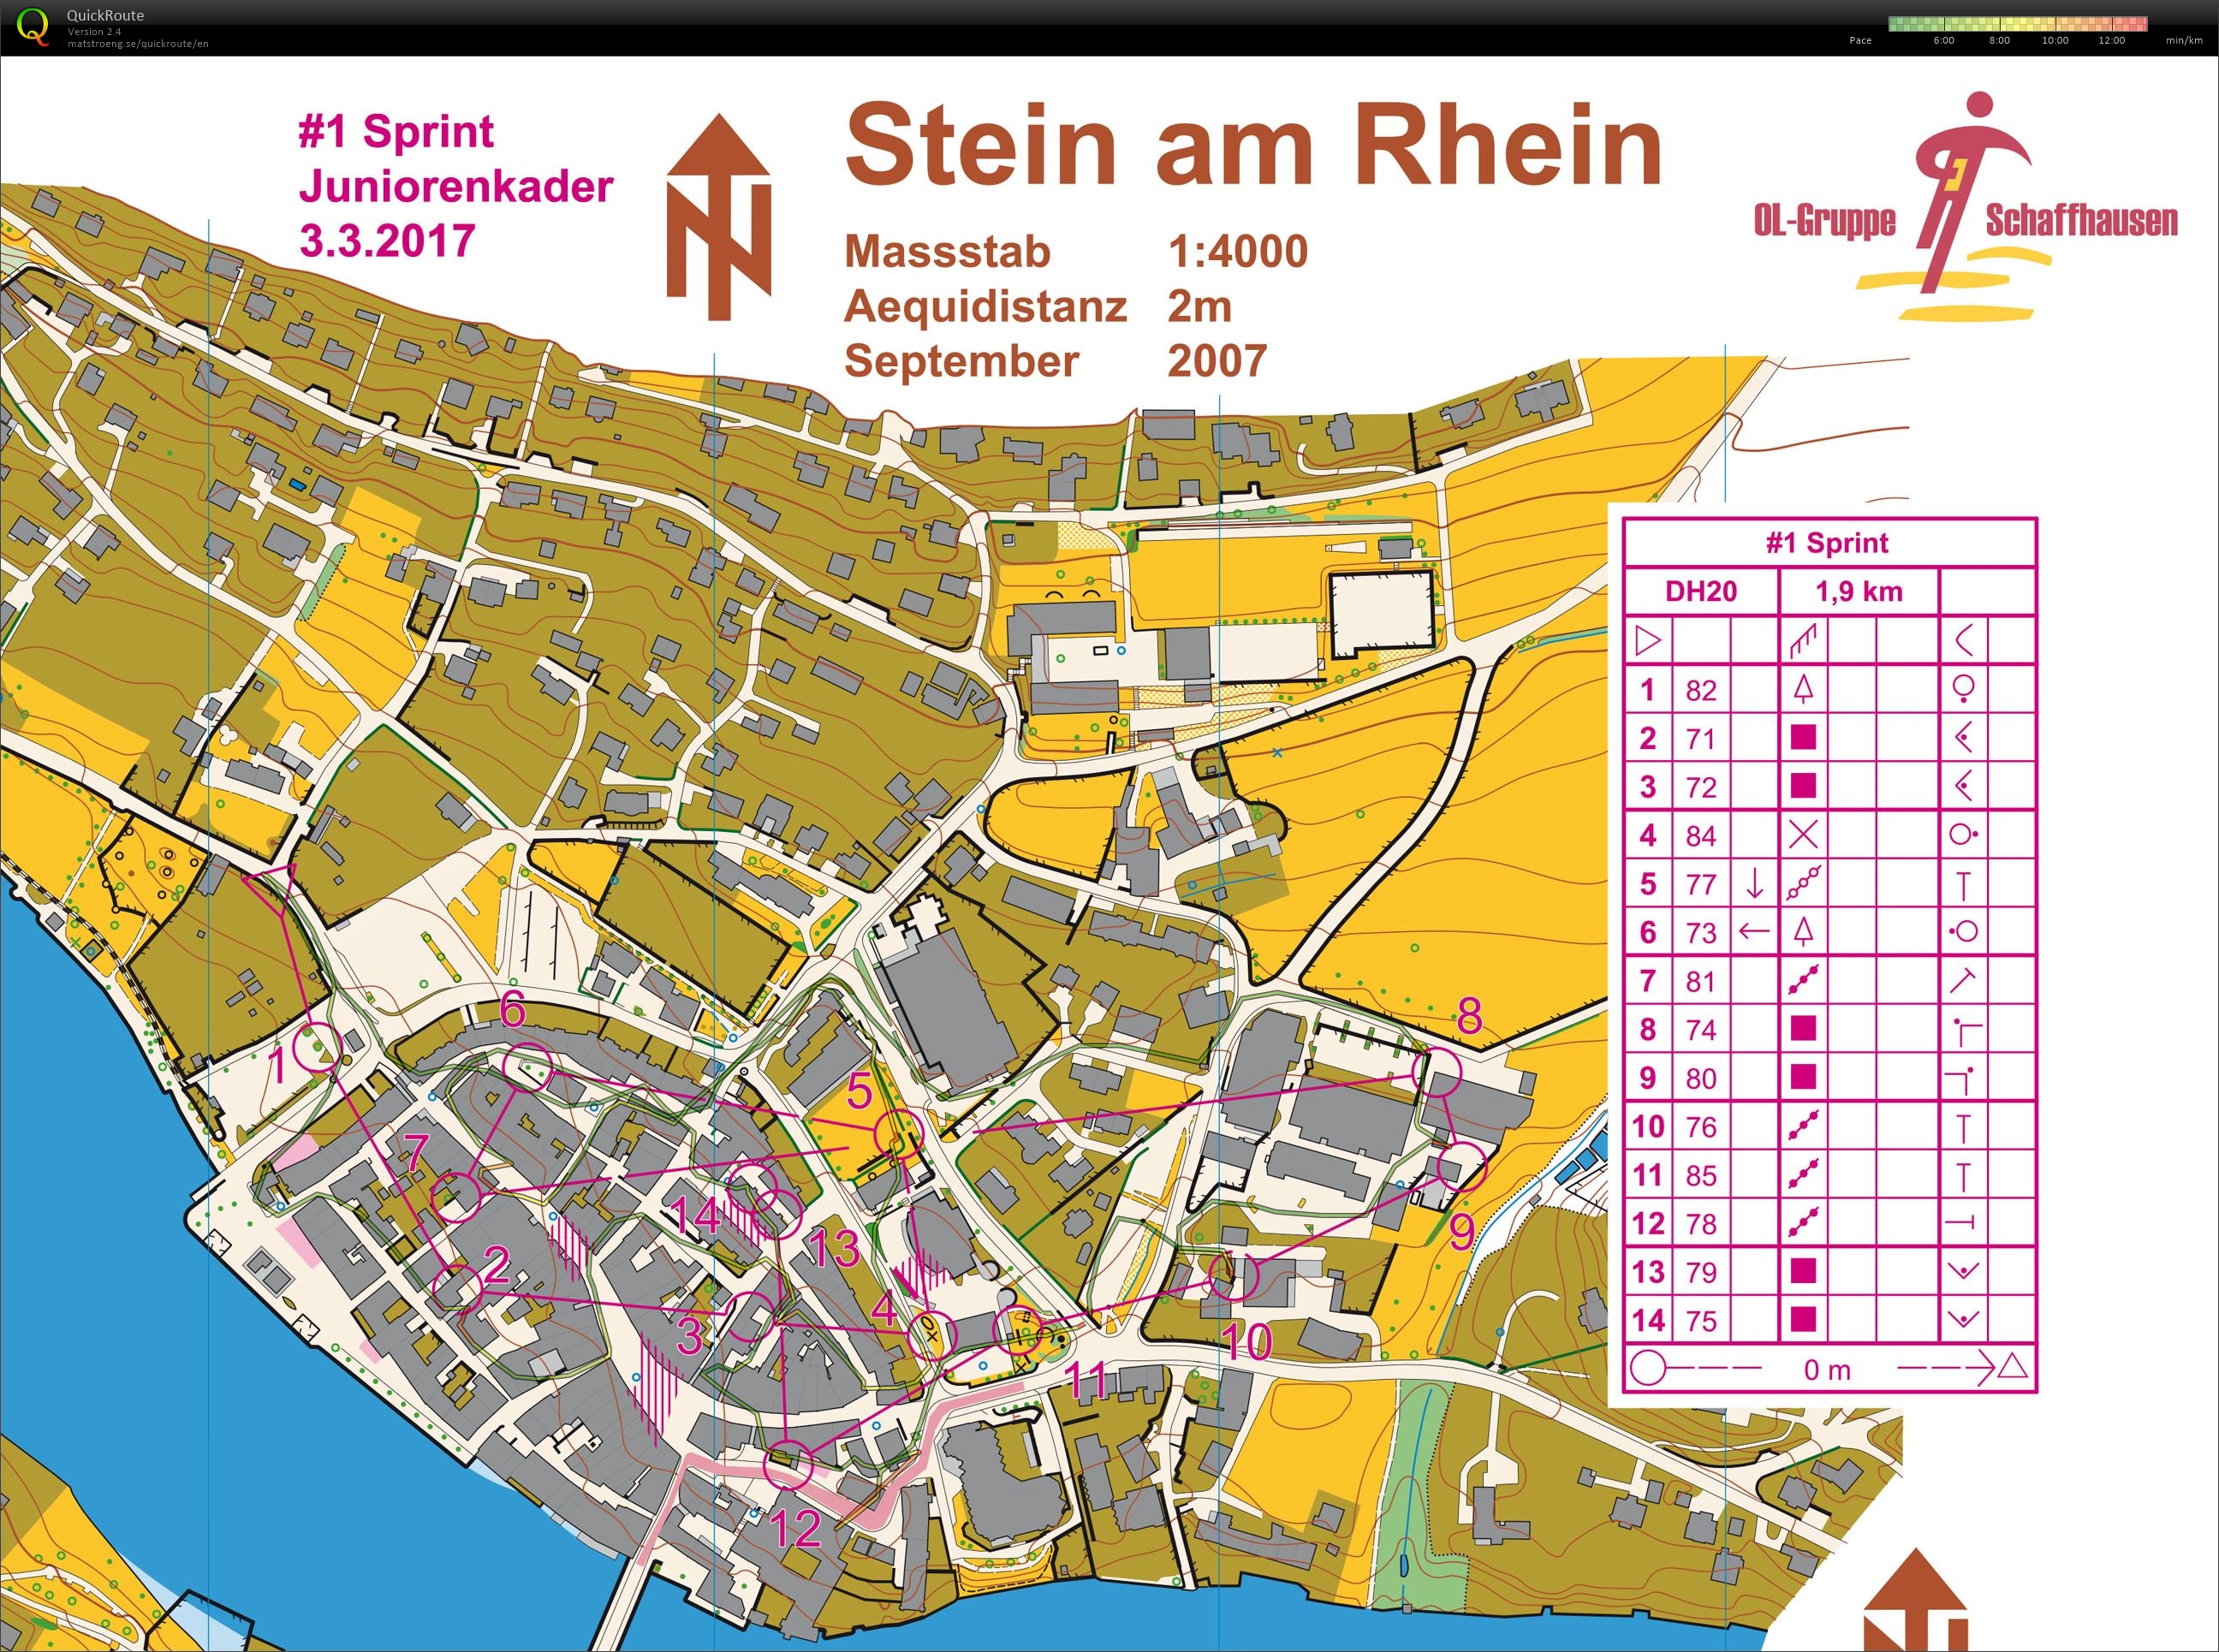 Stein am Rhein (24-07-2020)